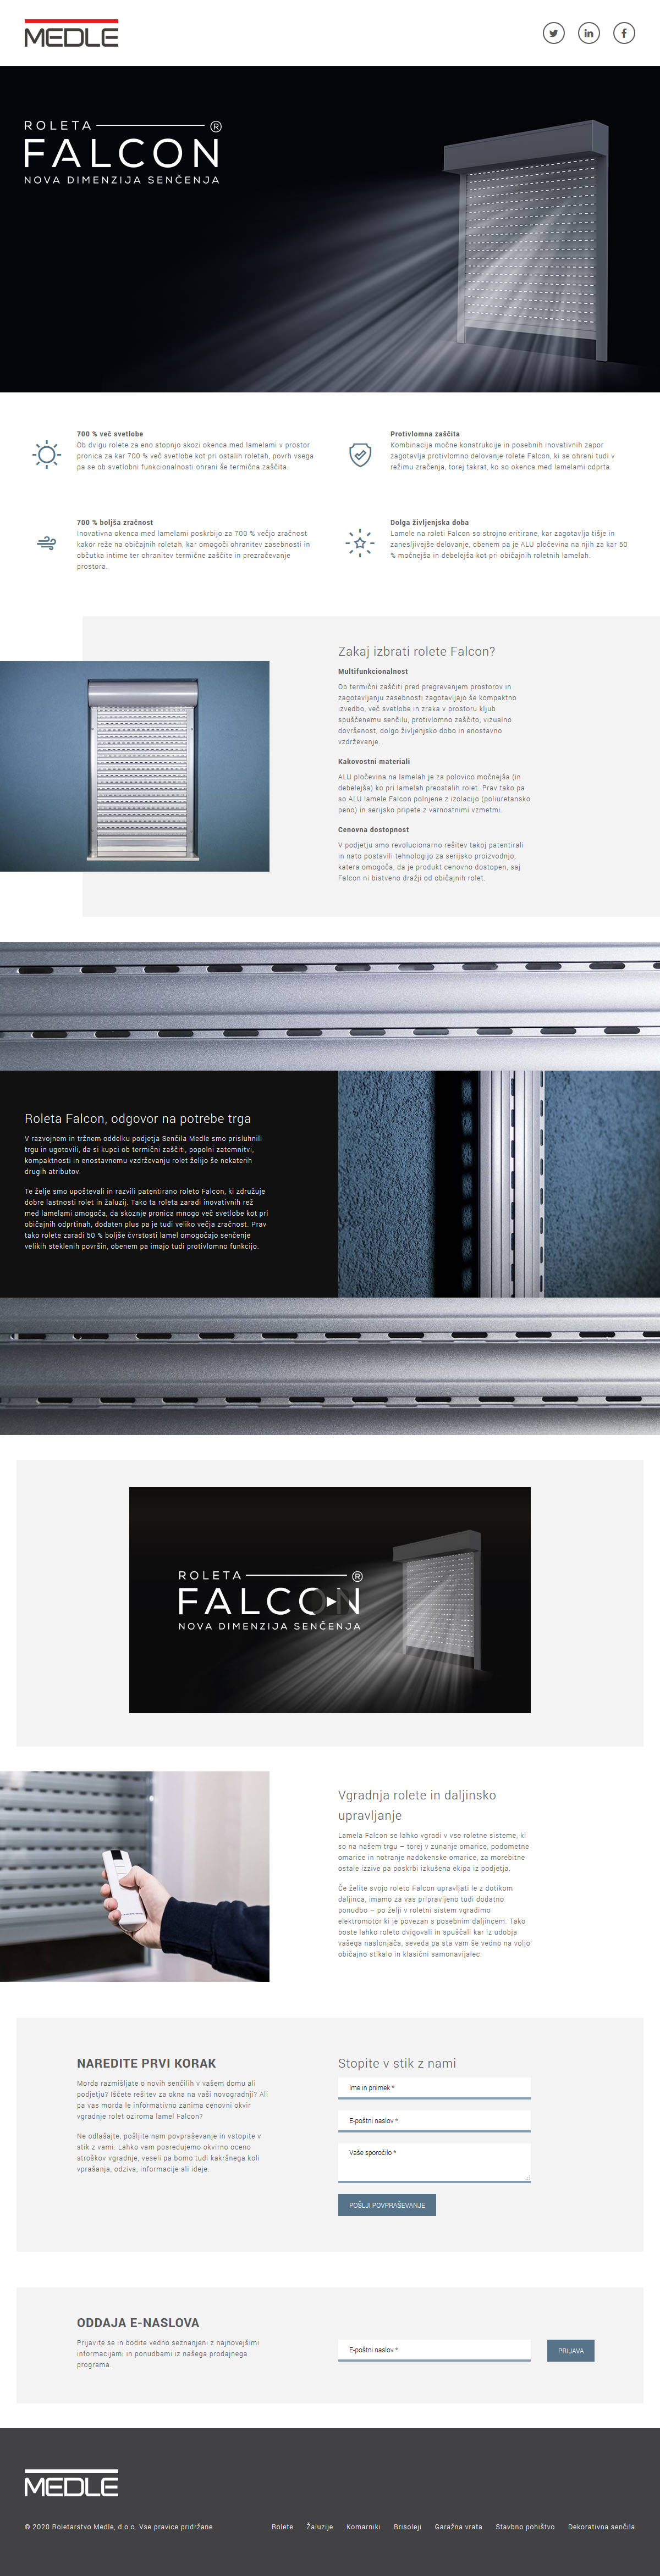 Predstavitvena stran Falcon Roletarstvo Medle